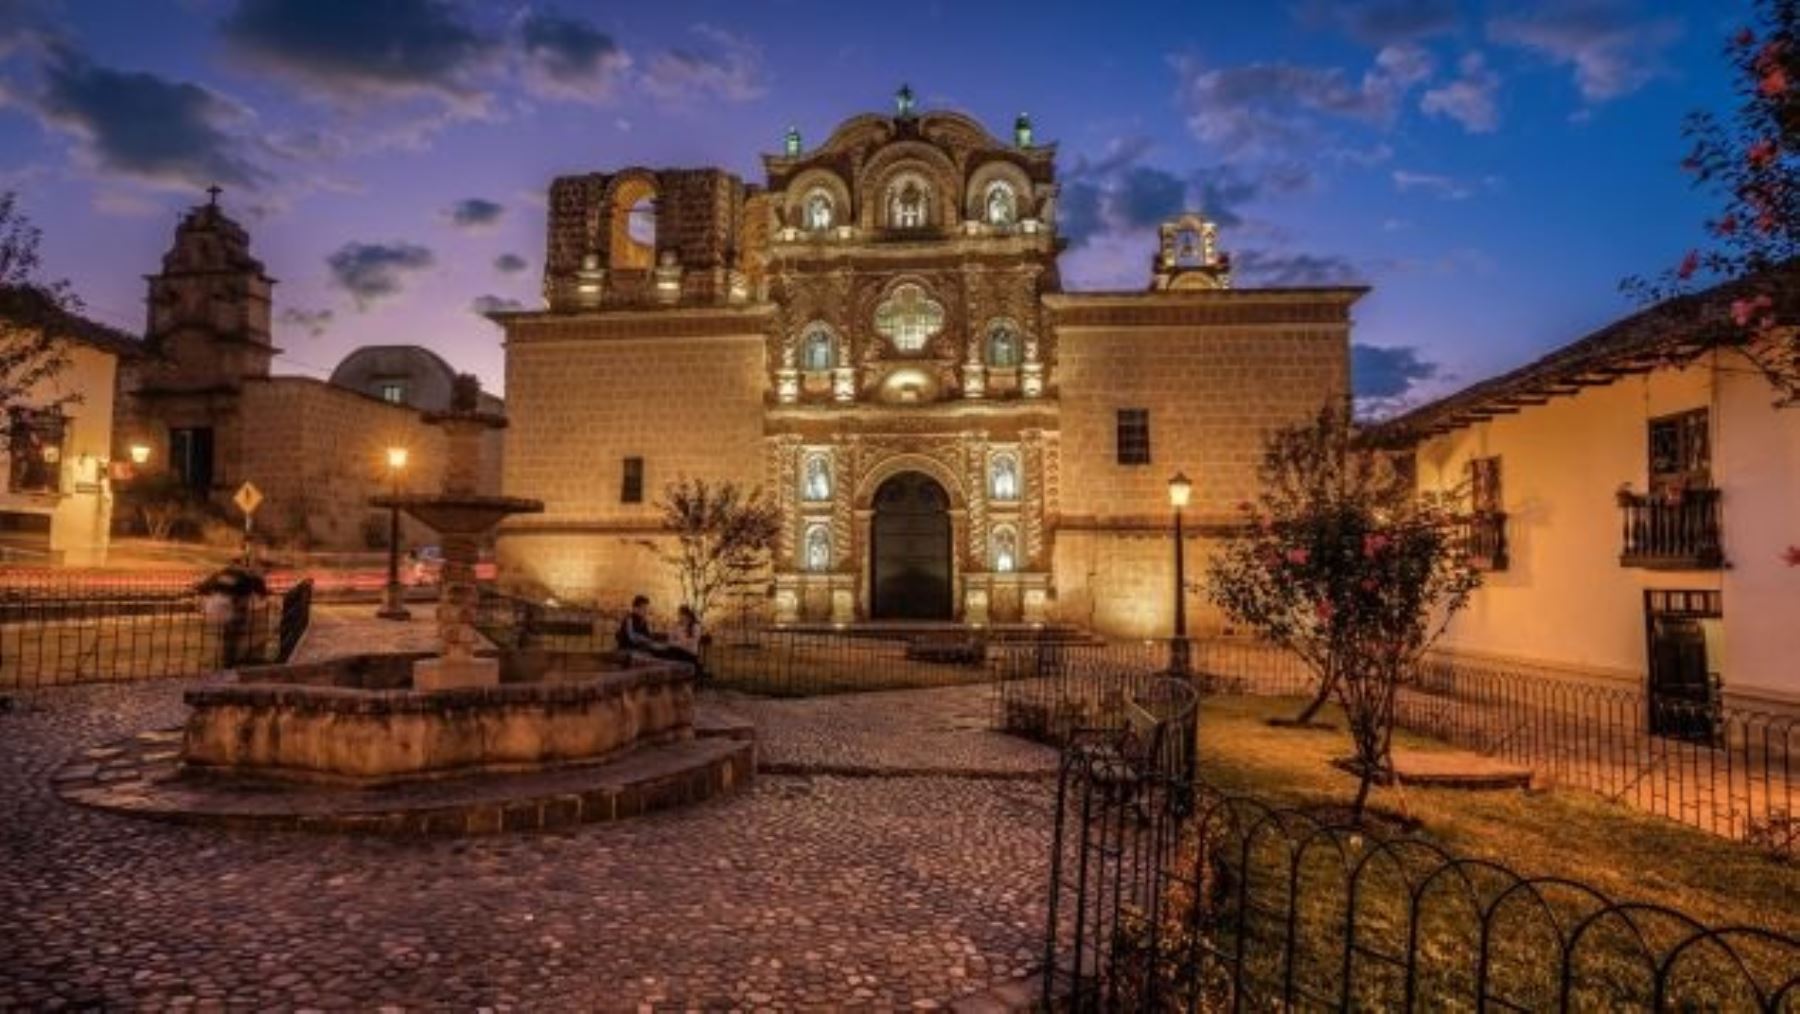 La ciudad de Cajamarca fue elegida como uno de los mejores 18 destinos del planeta para visitar este año por la cadena de noticias CNN de los Estados Unidos, que destaca su cultura expresada en la belleza arquitectónica de las edificaciones incaicas e iglesias católicas de estilo barroco, así como sus espectaculares paisajes andinos.